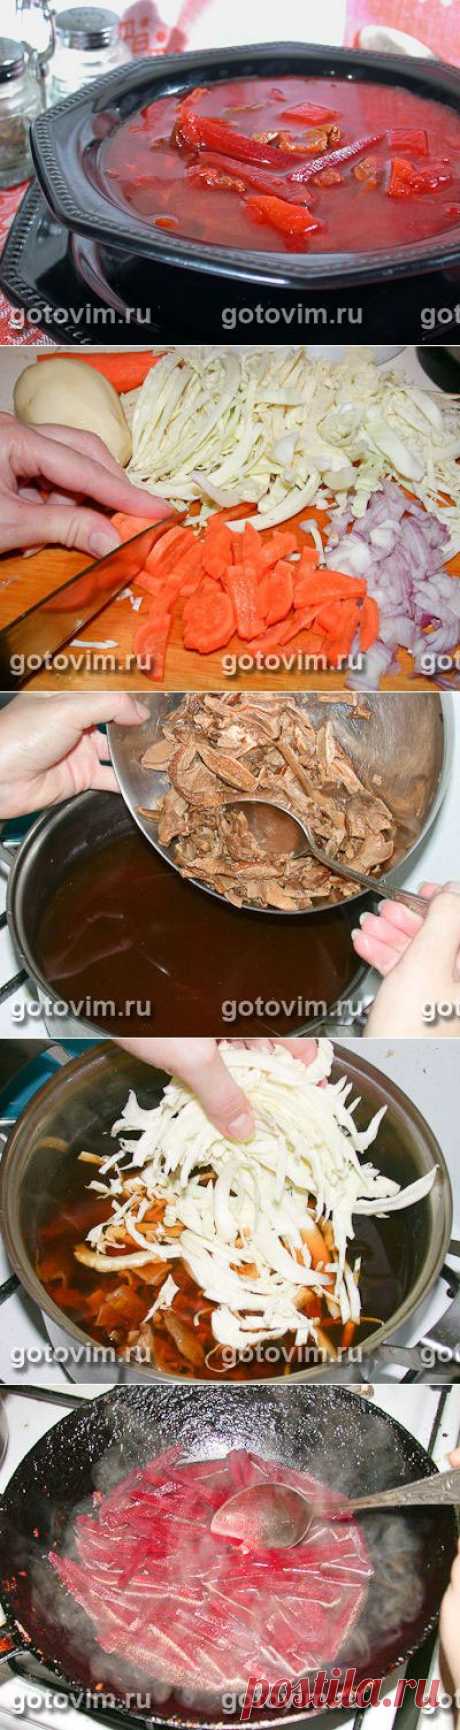 Борщ с сушеными грибами. Фото-рецепт / Готовим.РУ